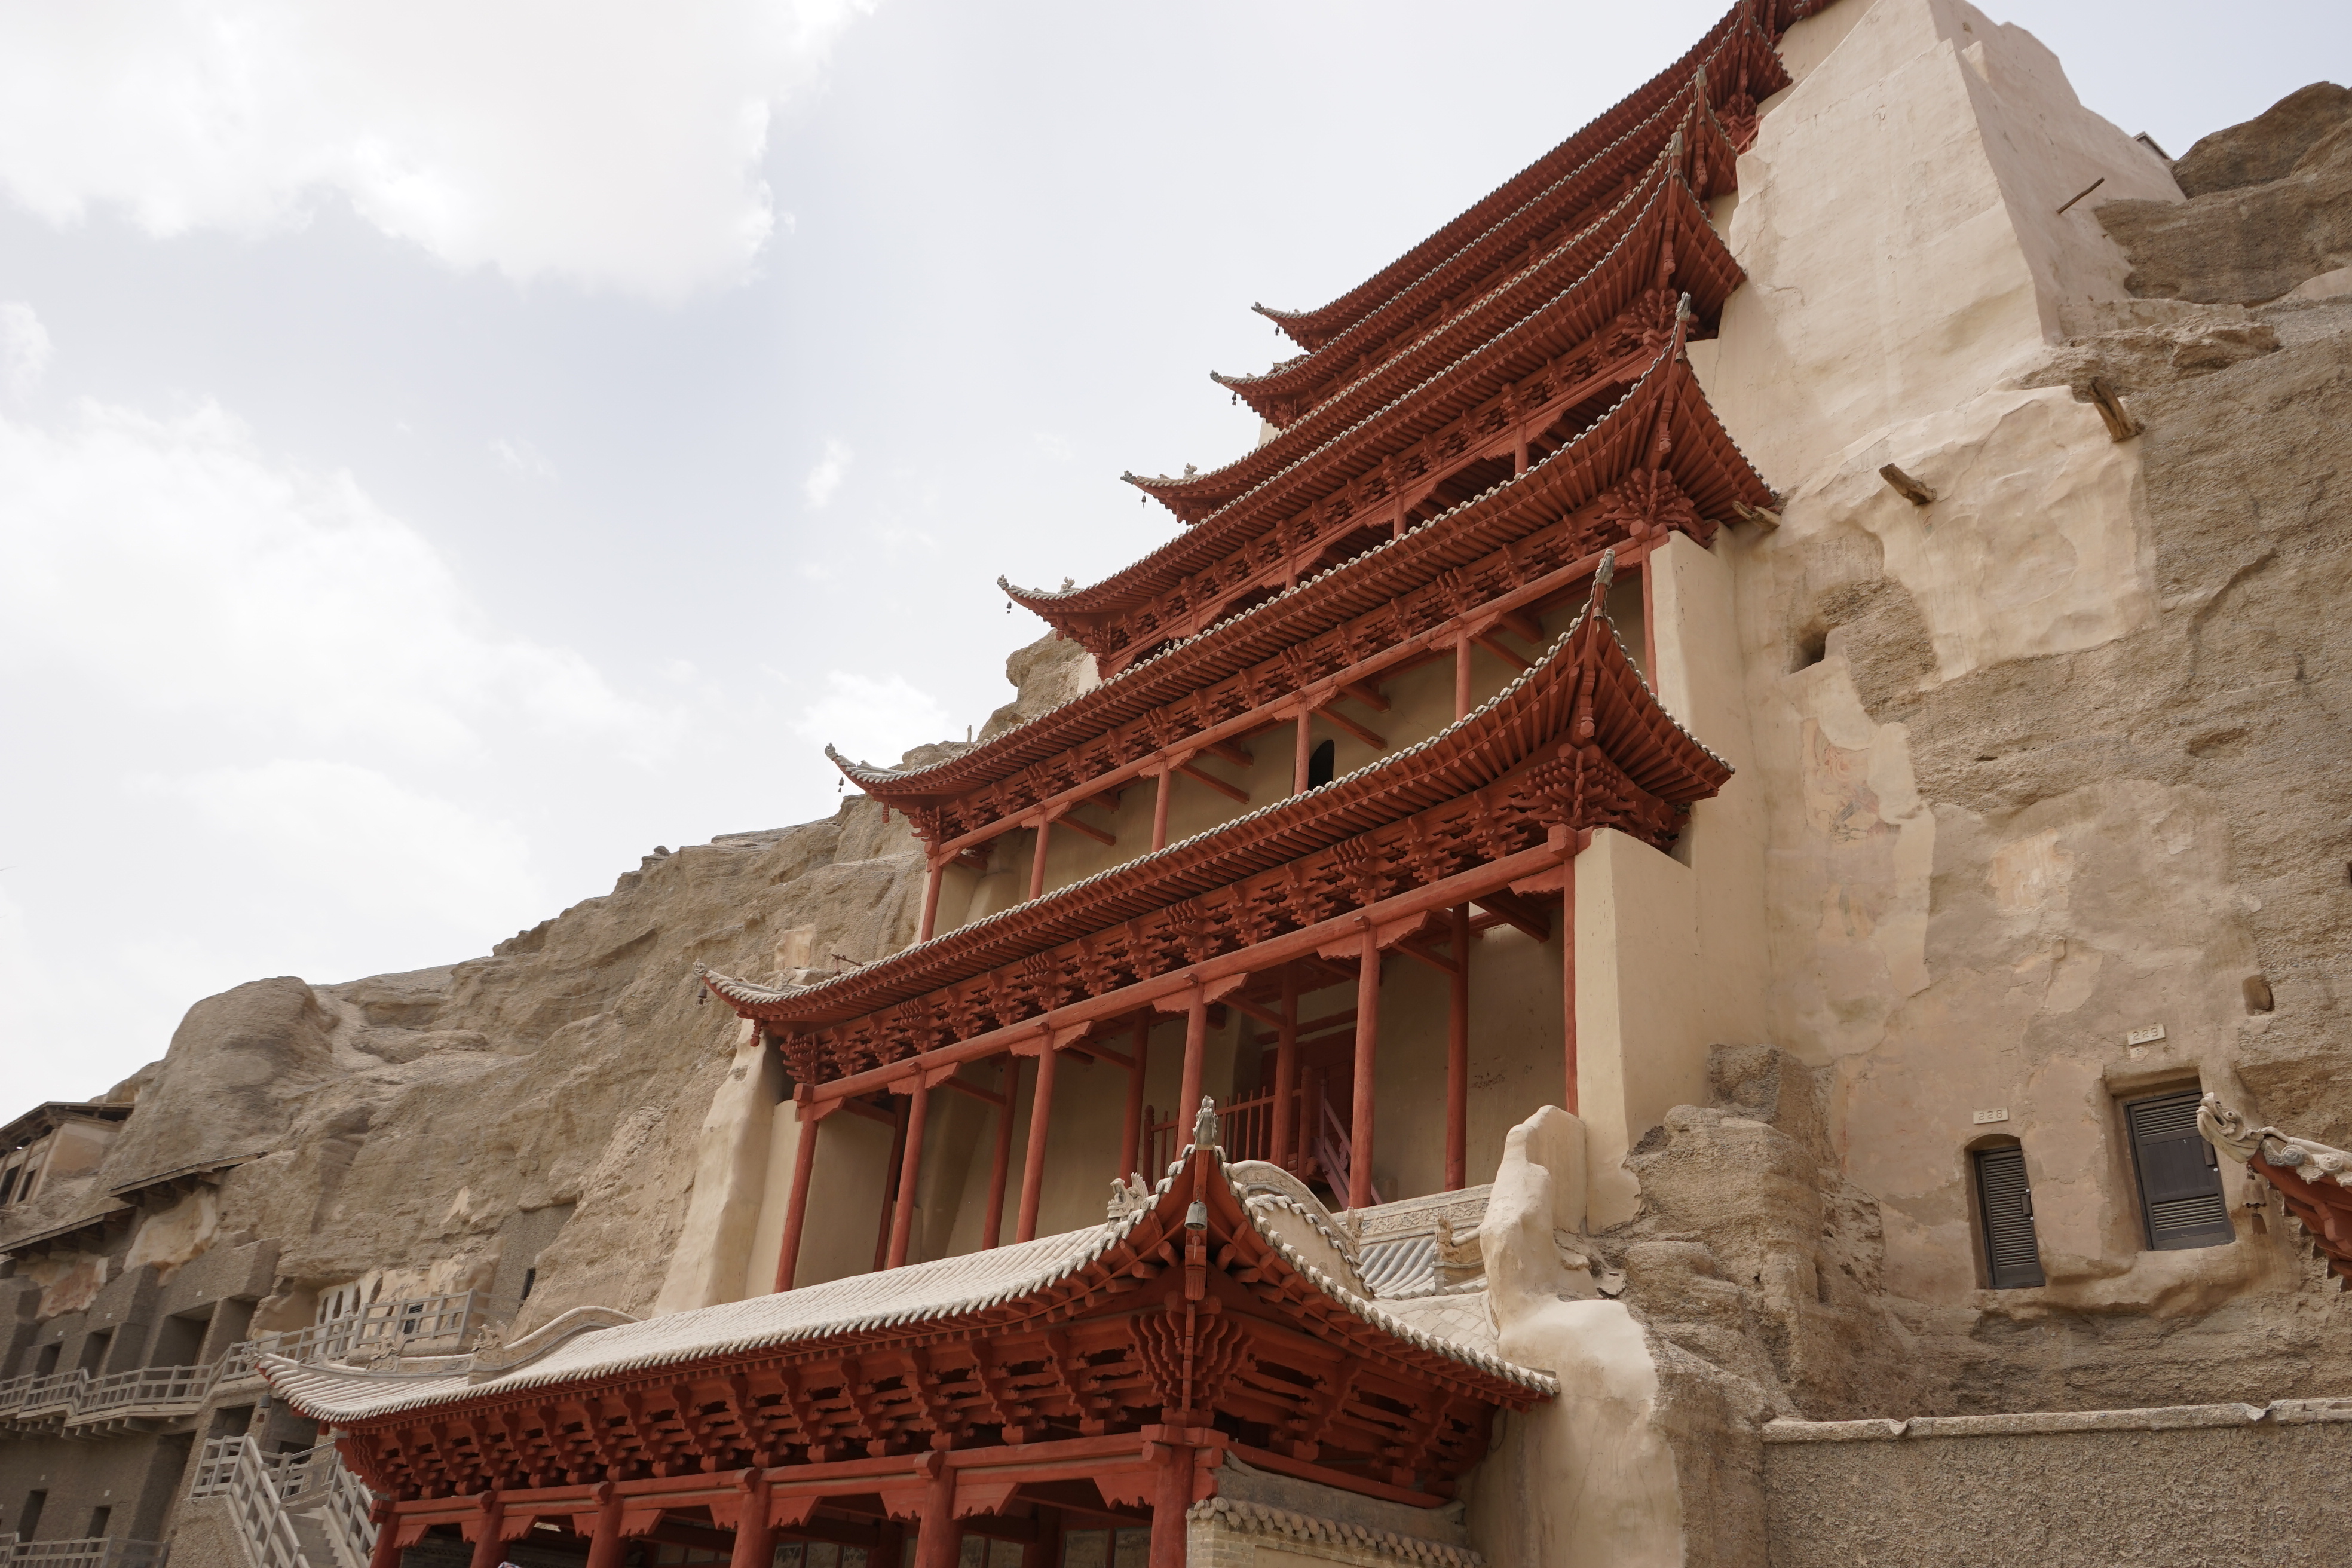 西藏美景终结地--纳木错圣象天门 - 天府旅游 - 天府社区